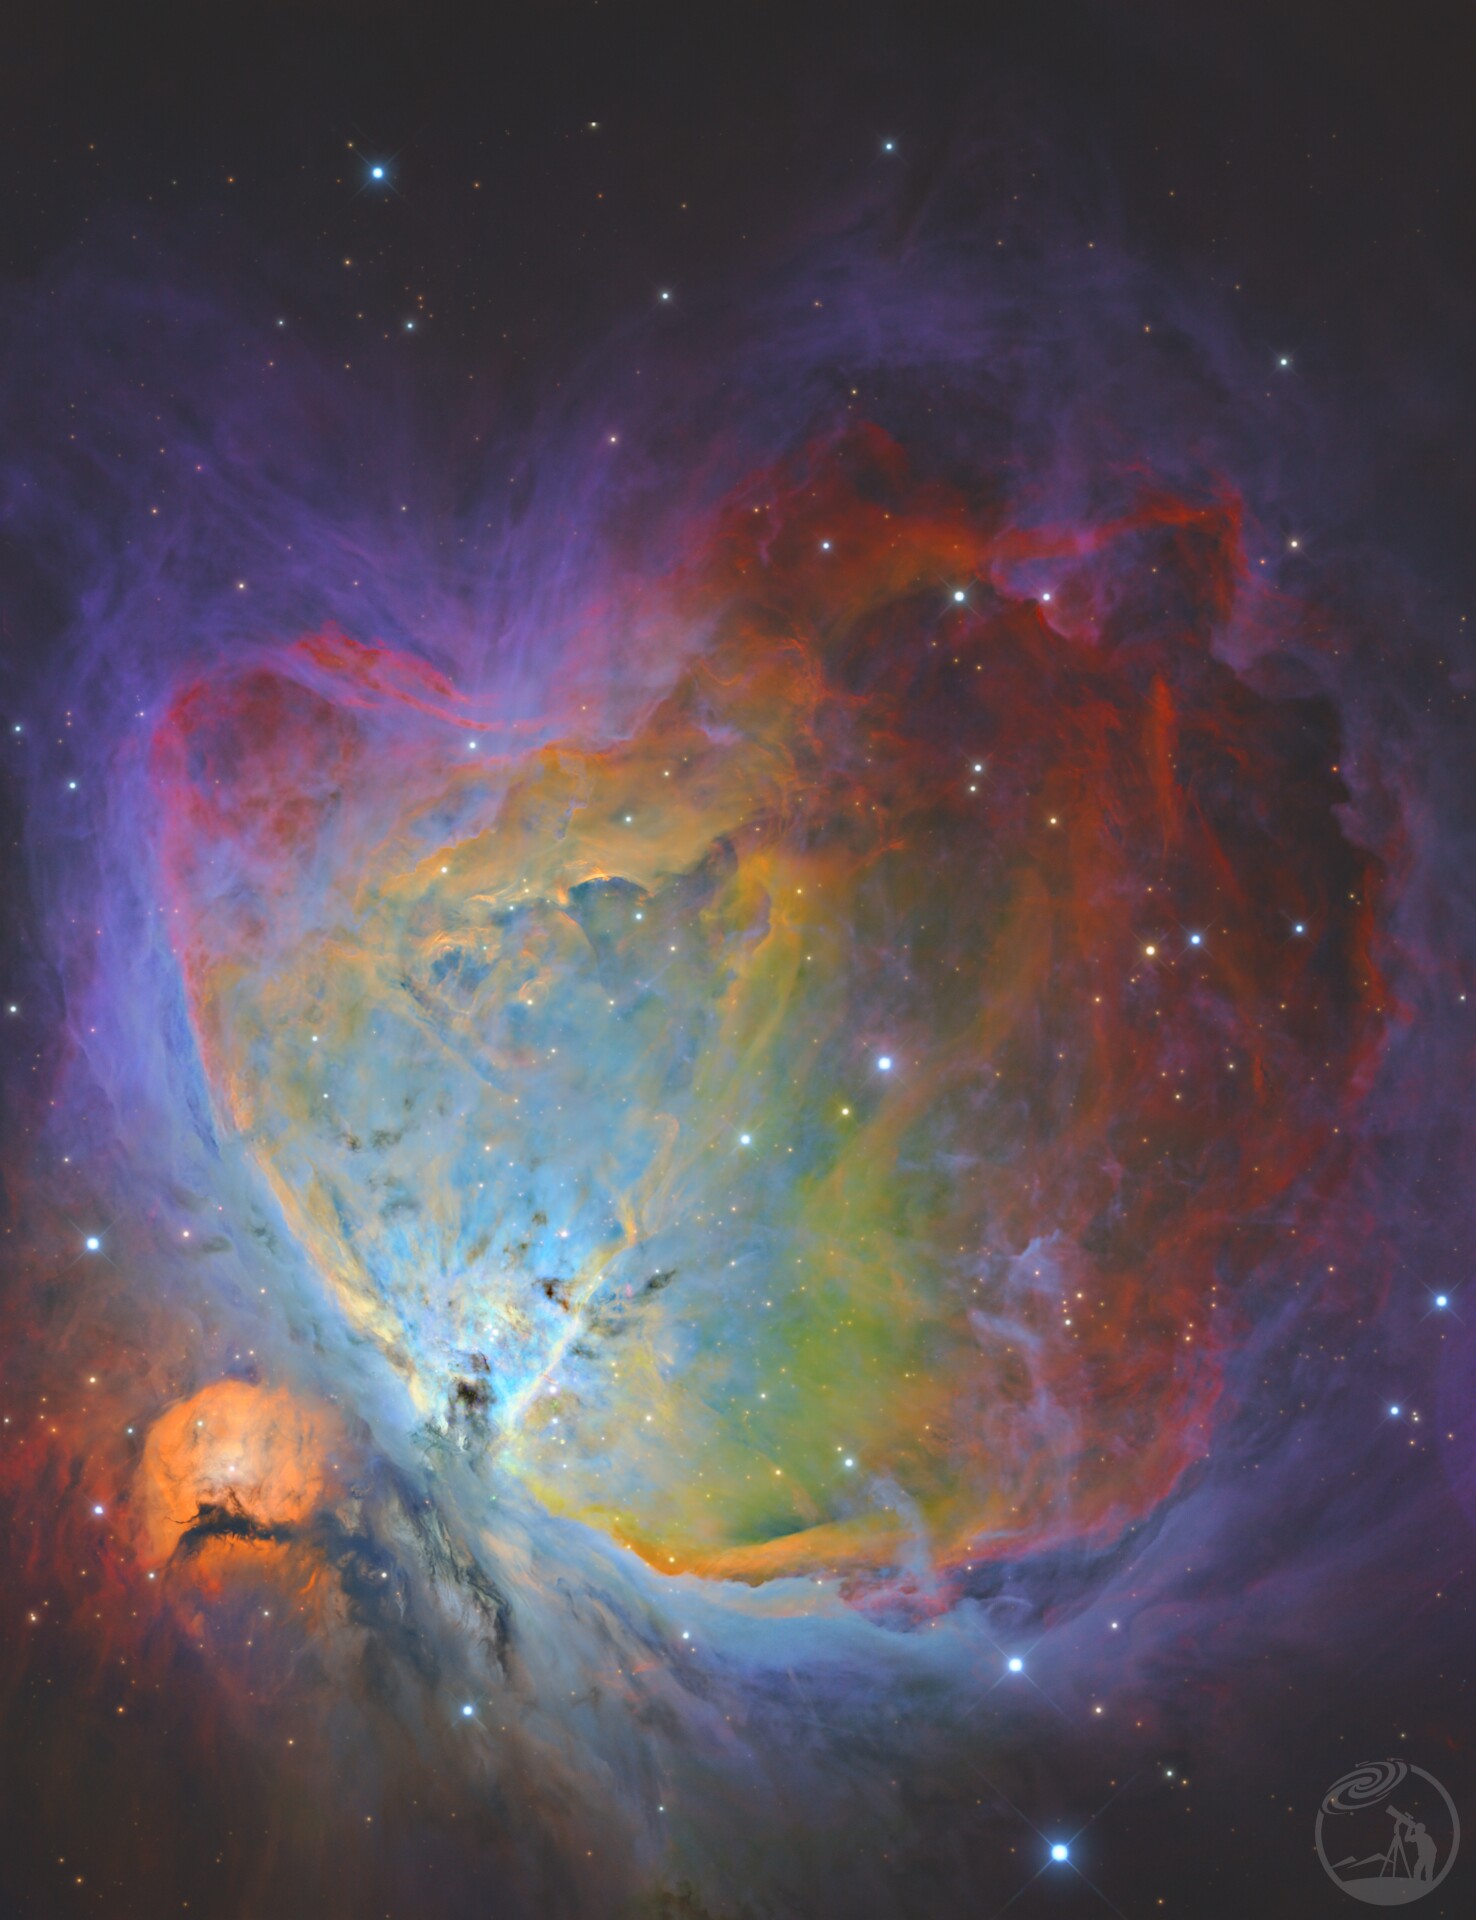 M42 猎户座大星云窄带HDR